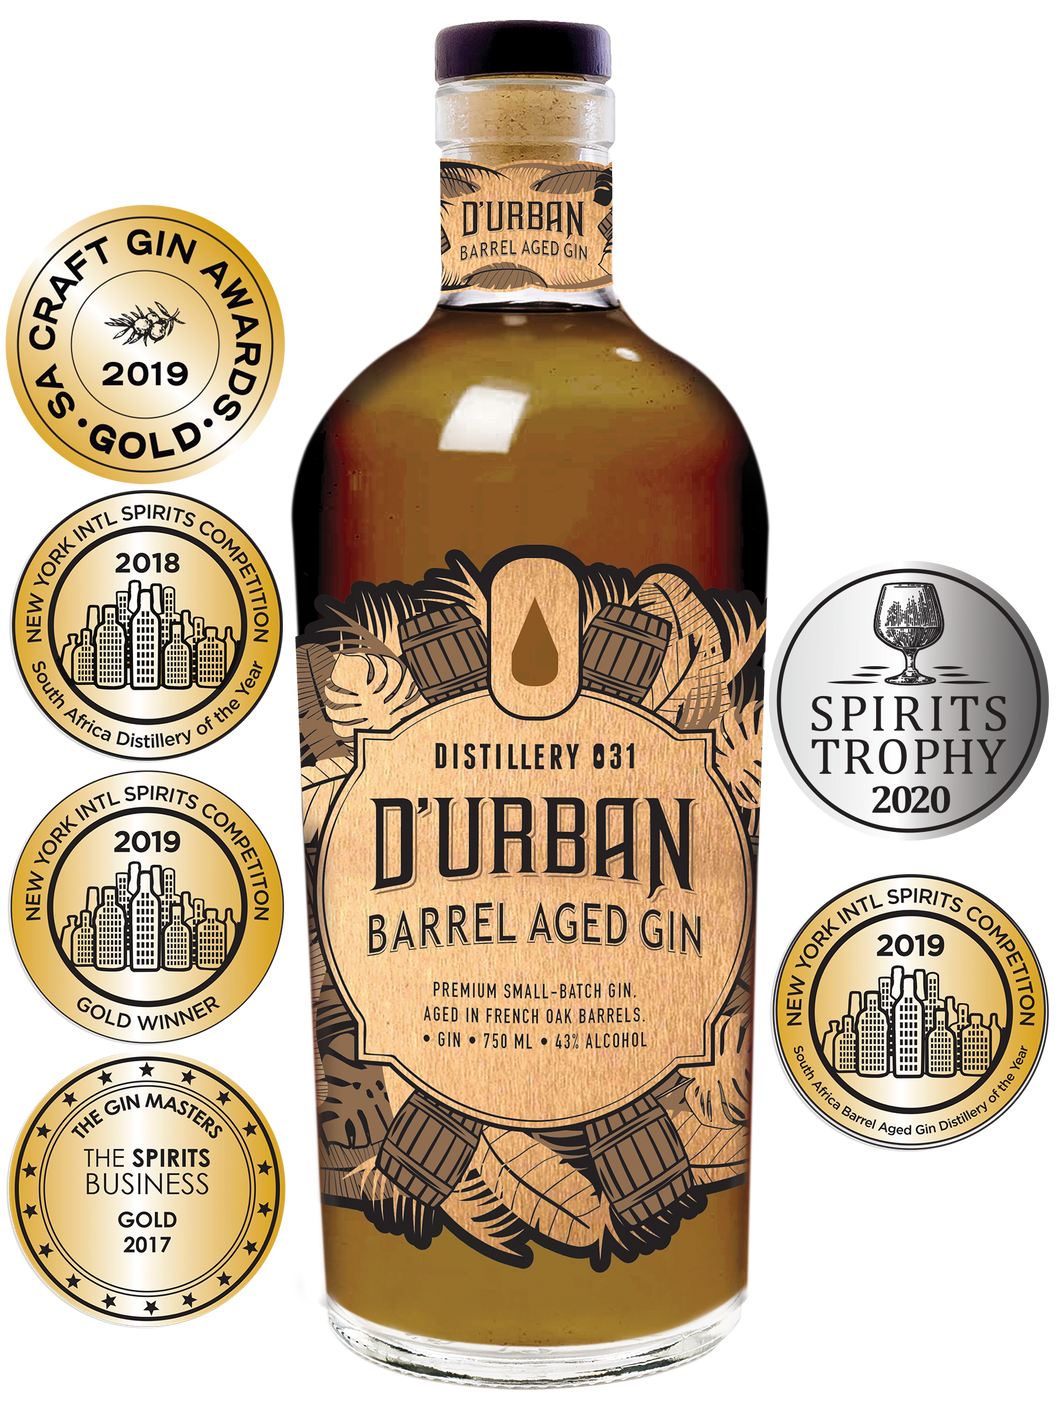 D'Urban Barrel Aged Gin 750ml (Distillery 031)